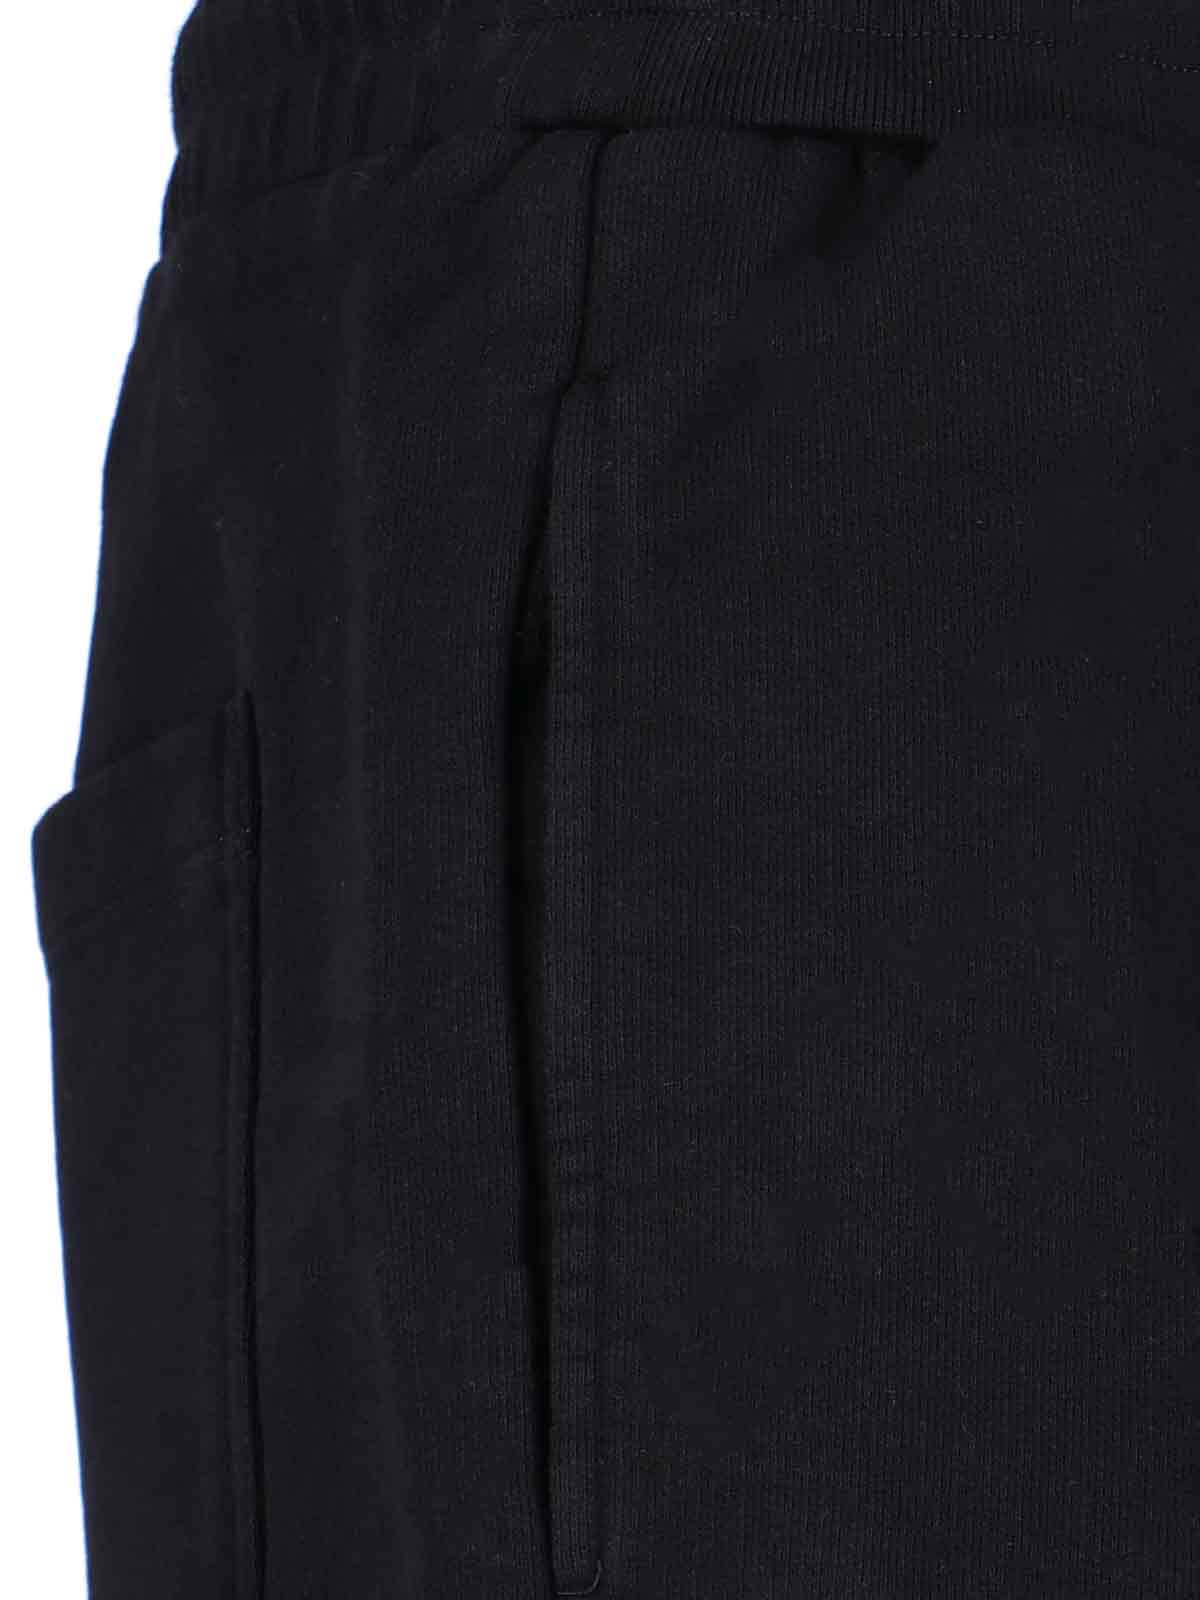 Shop Golden Goose Star Shorts In Black